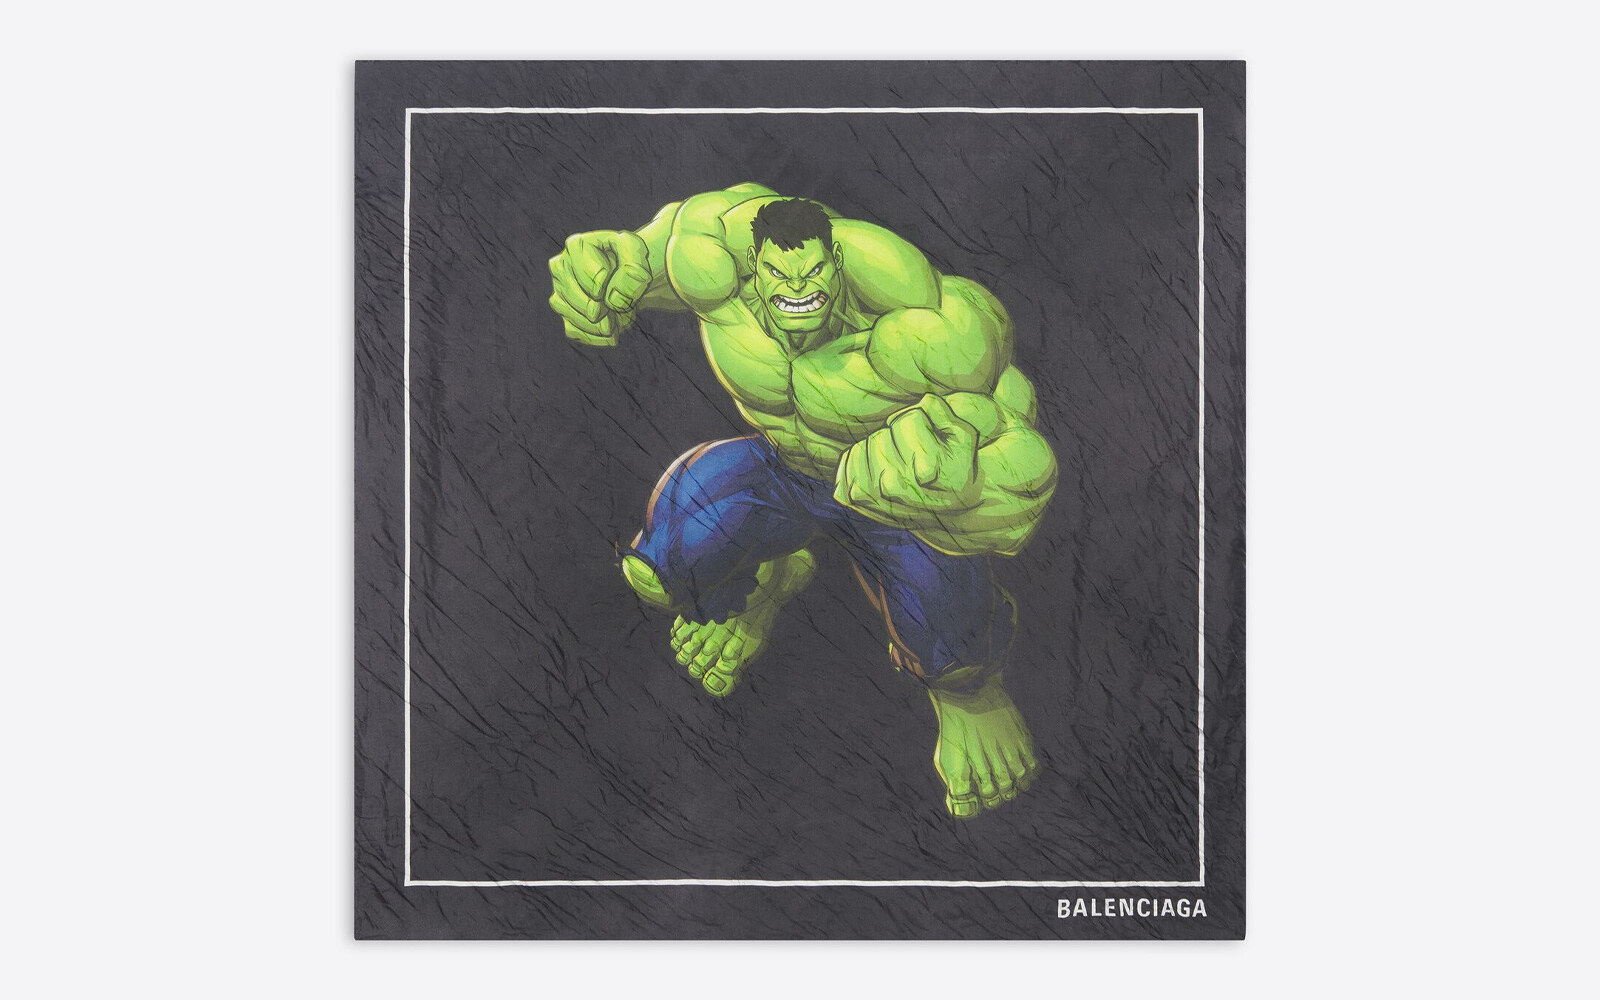 Balenciaga x Hulk Capsule Collection